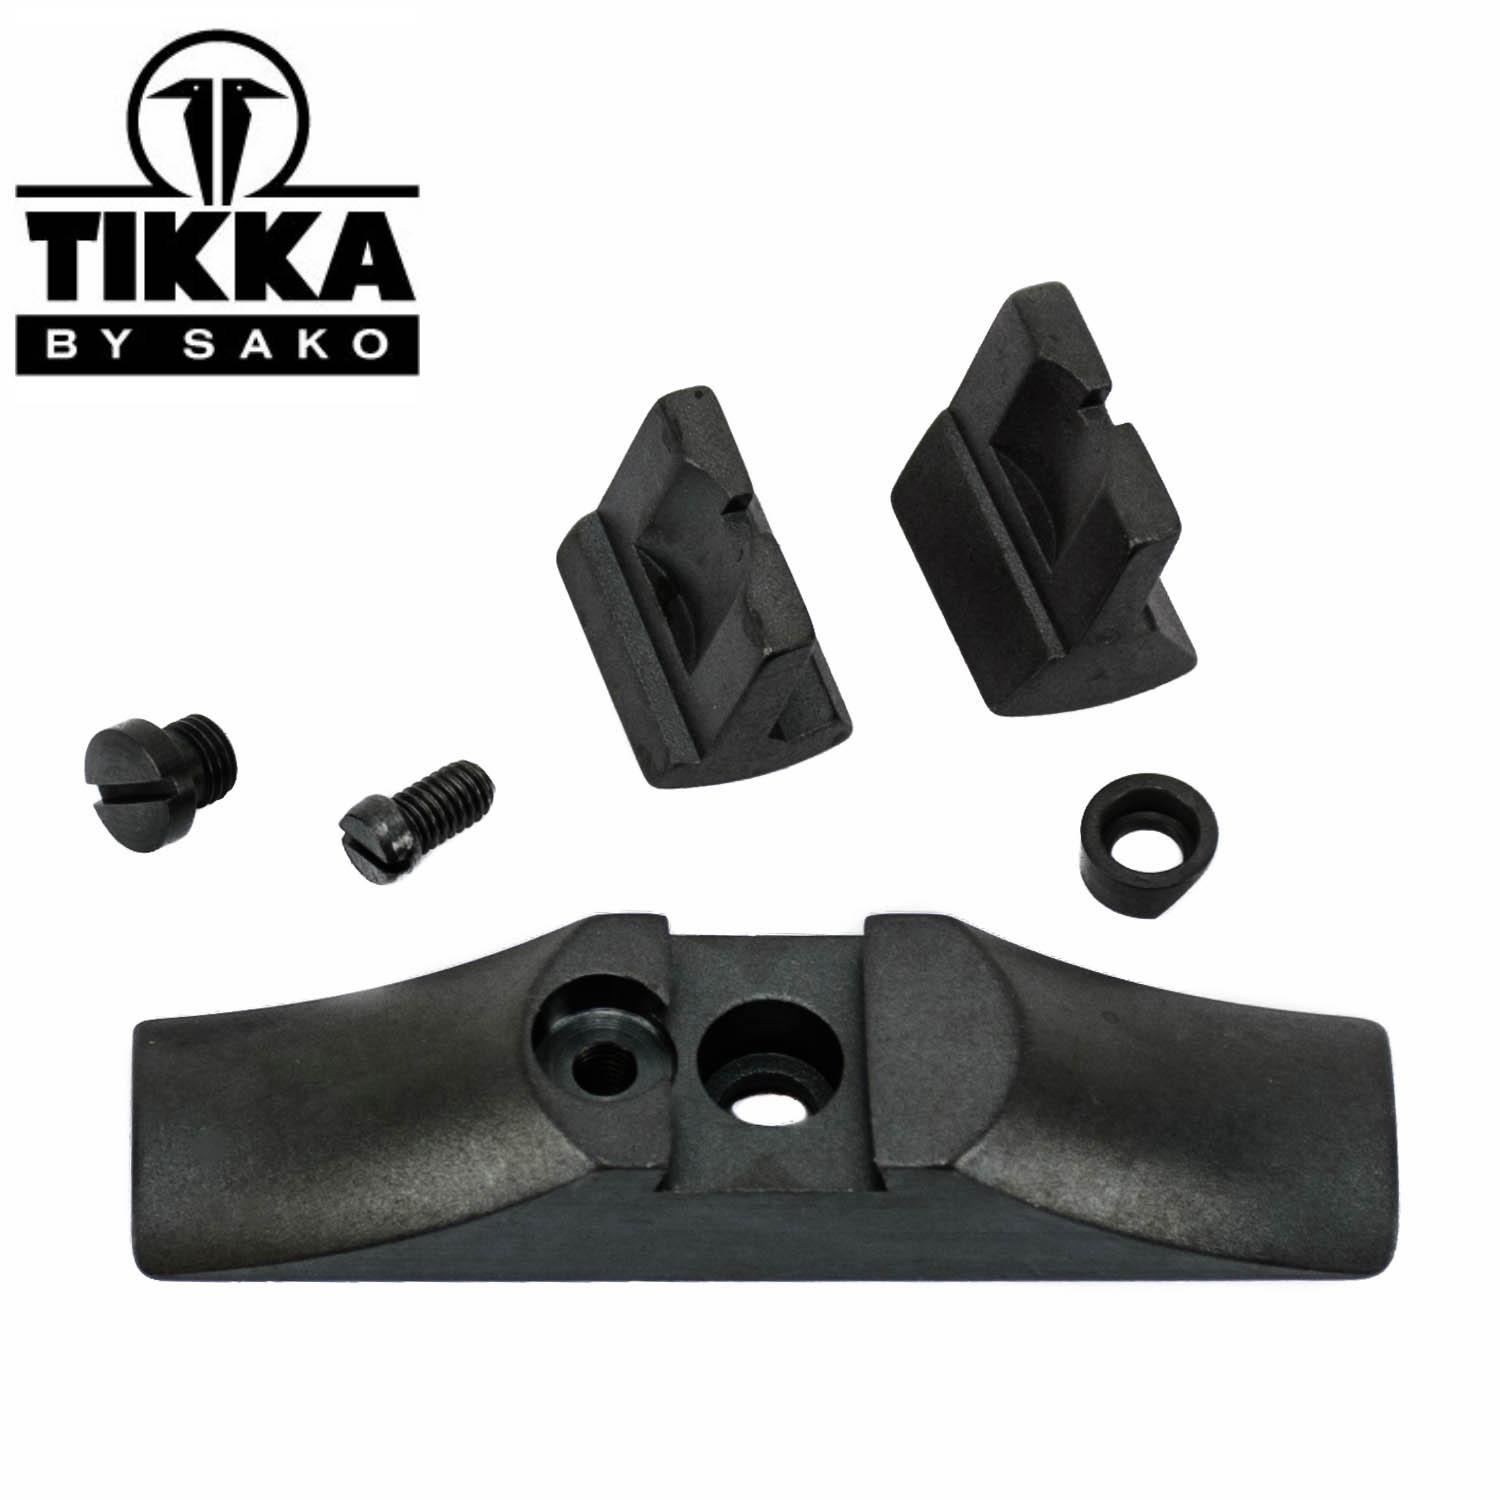 Tikka Complete Rear Sight, Standard: MGW